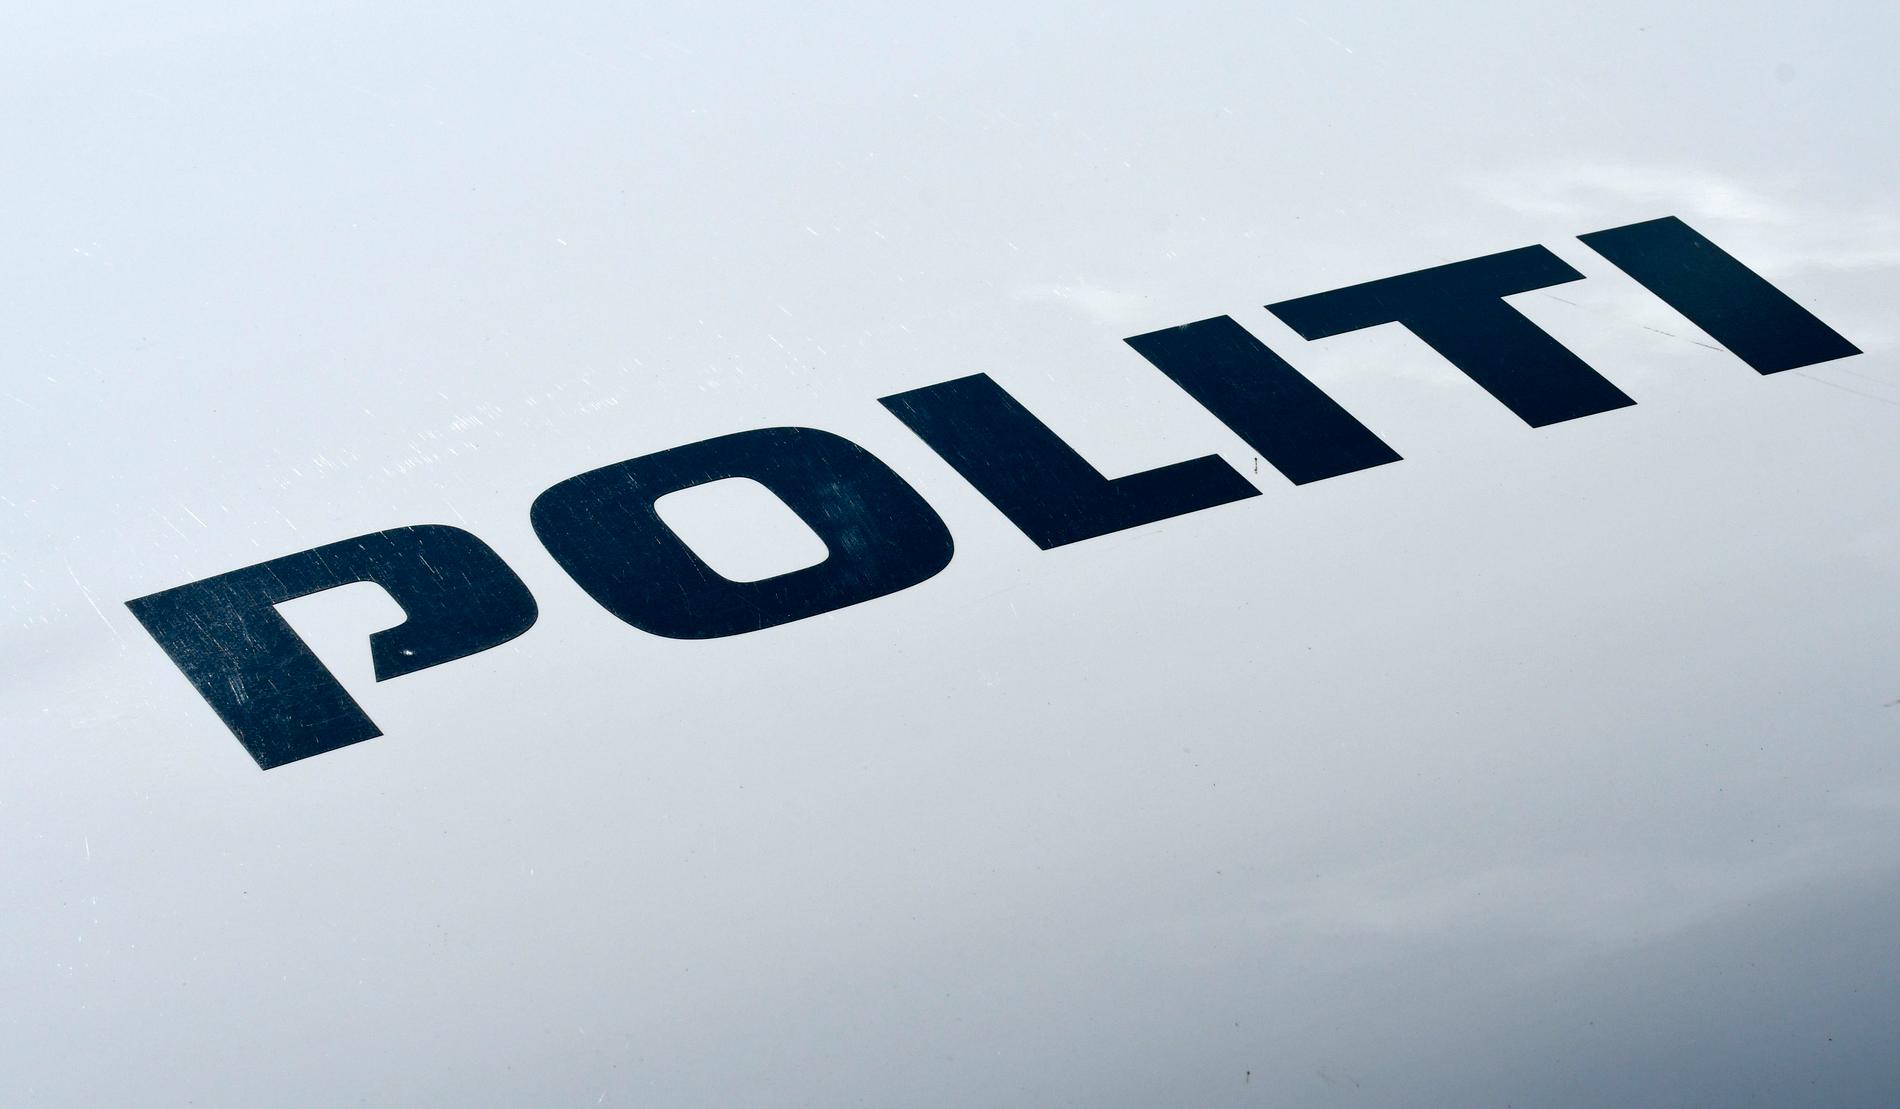 En man kvävdes till döds på sin arbetsplats, uppger den danska polisen. Arkivbild.